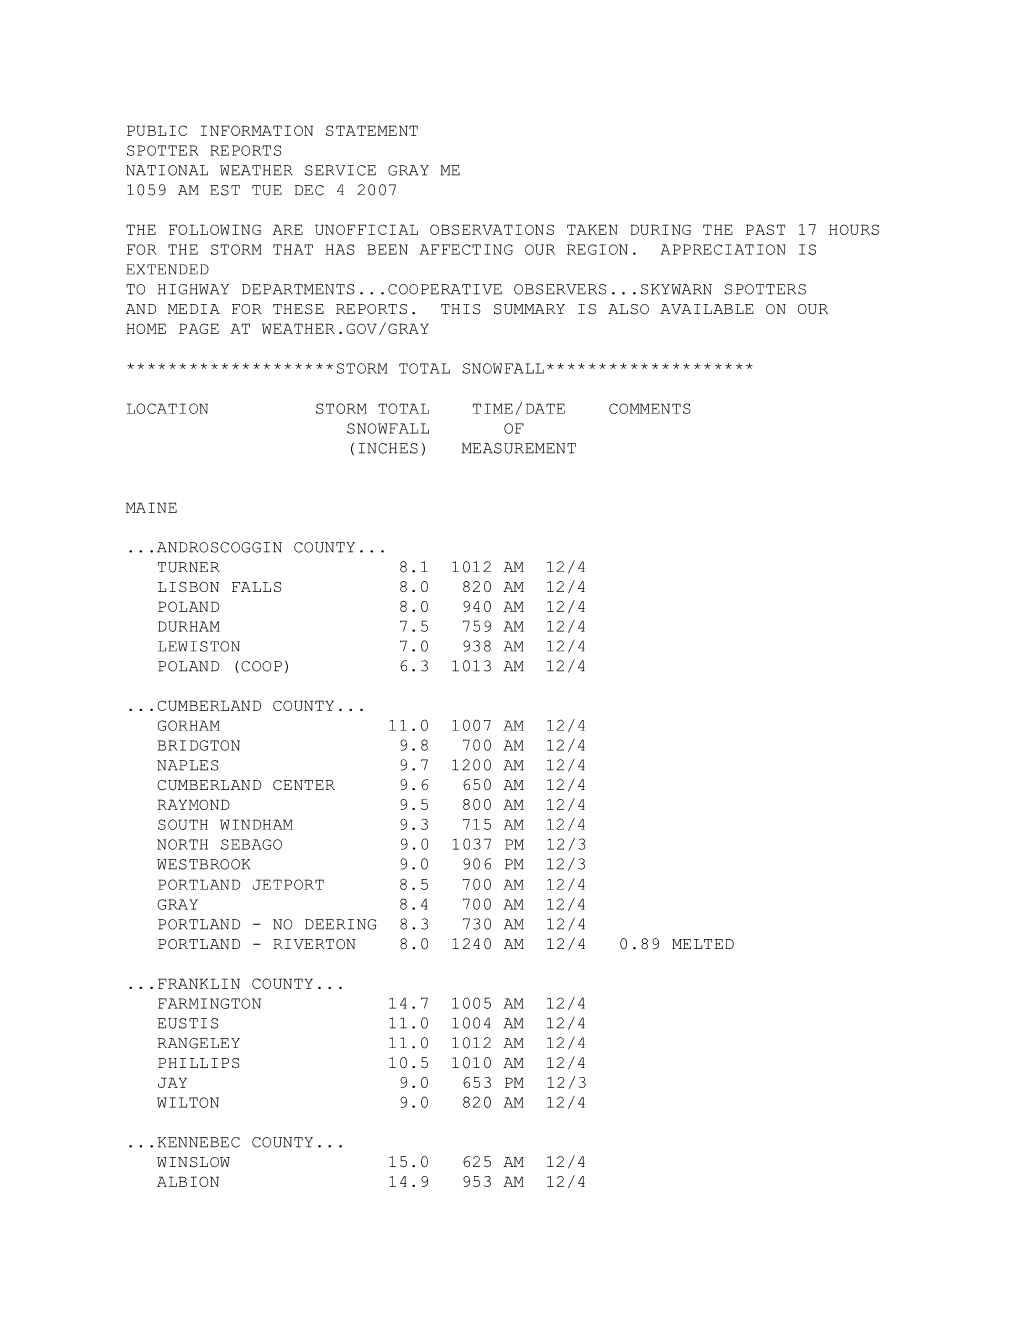 Public Information Statement Spotter Reports National Weather Service Gray Me 1059 Am Est Tue Dec 4 2007